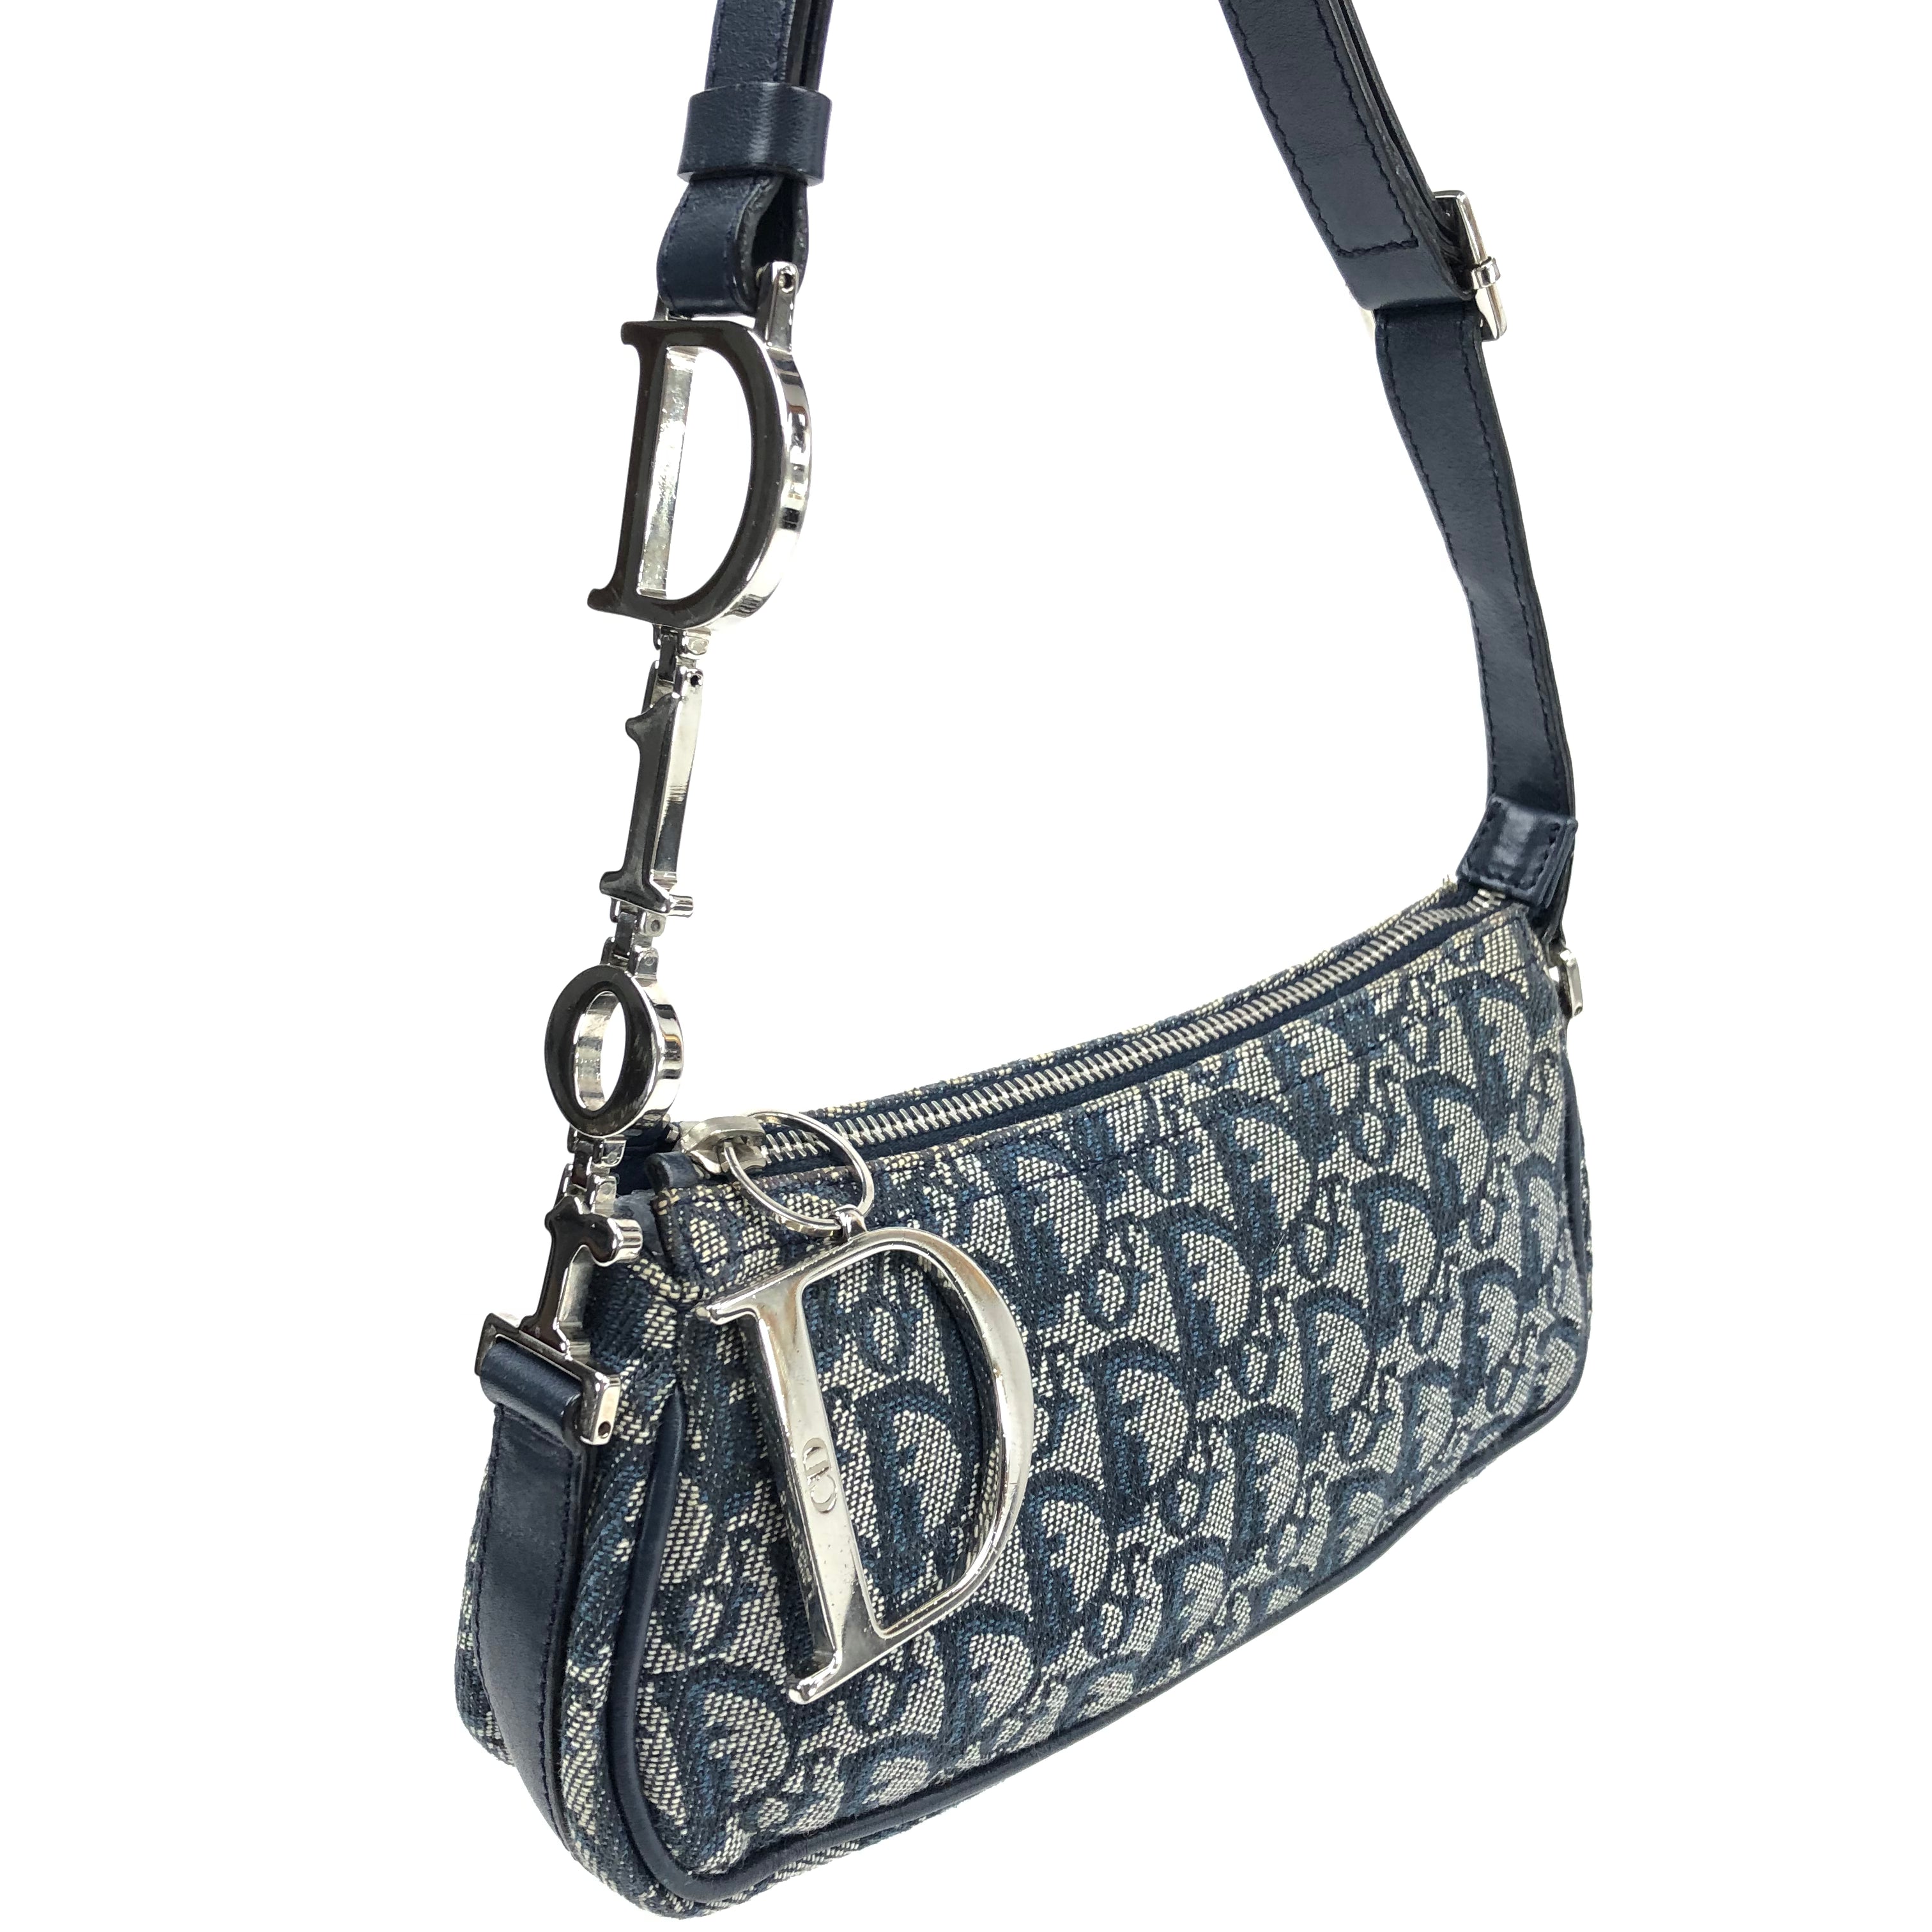 Christian Dior Monogram Shoulder Bag with Silver Detailing